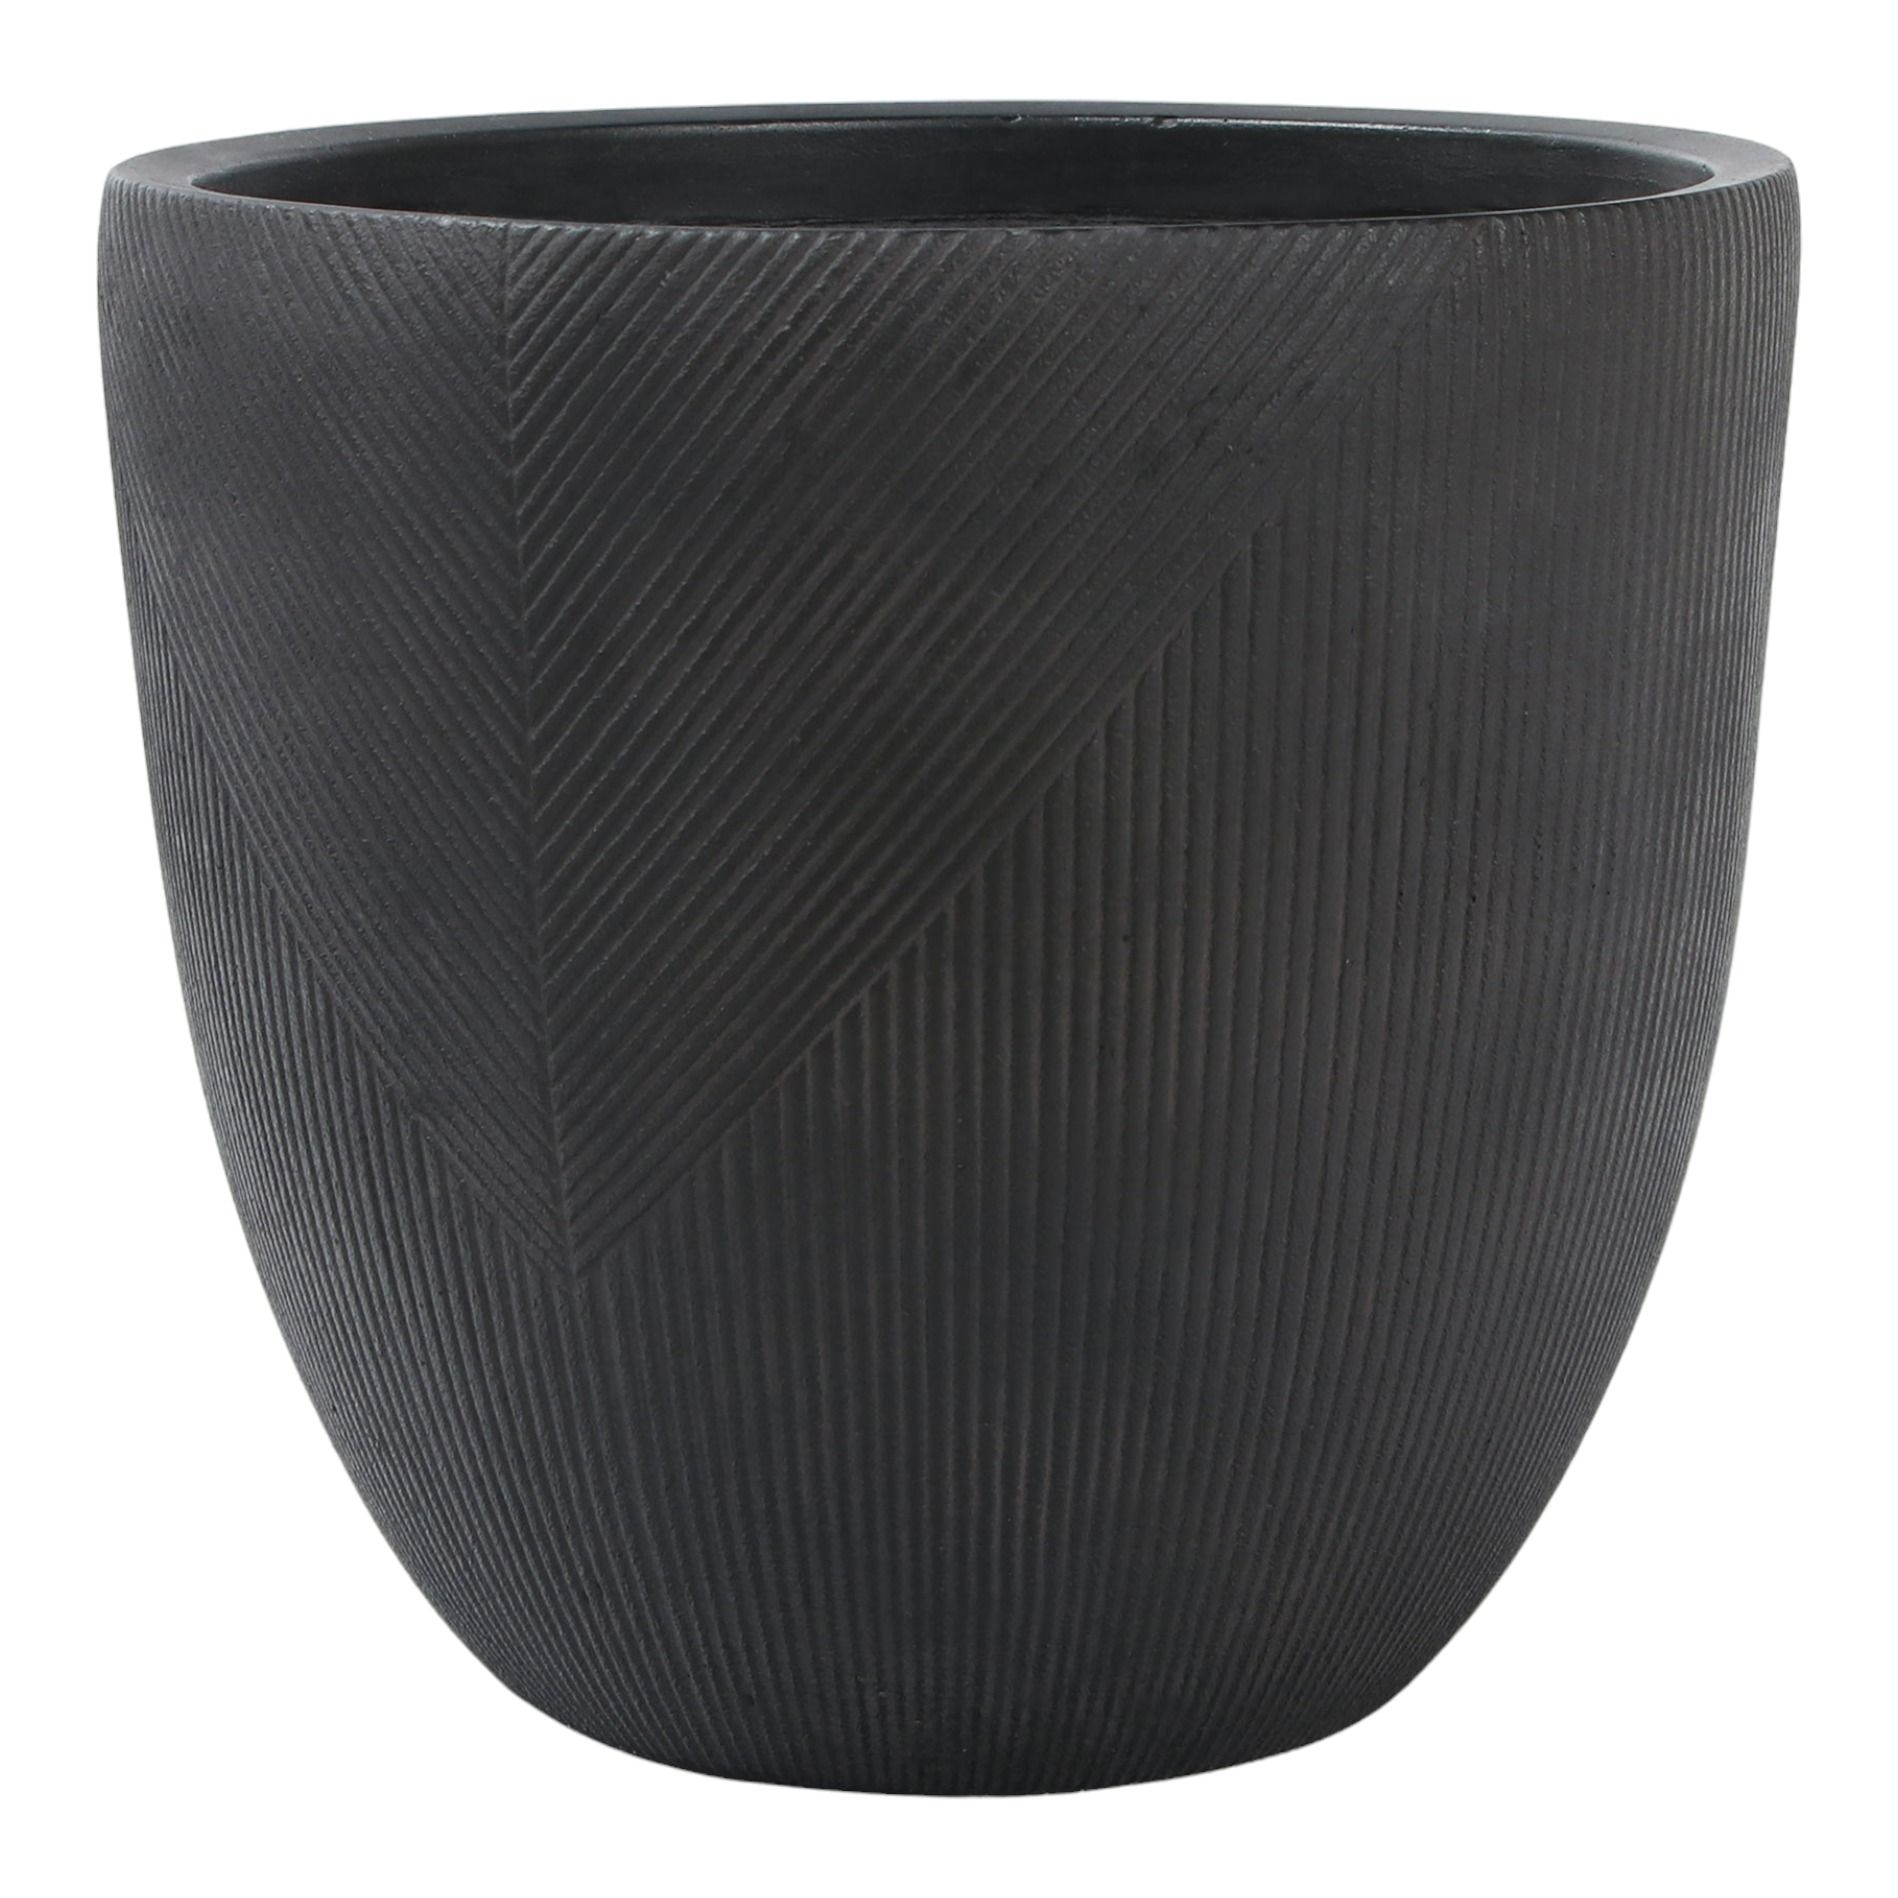 Горшок для цветов L&t pottery Геометрия Антик 30 см черный